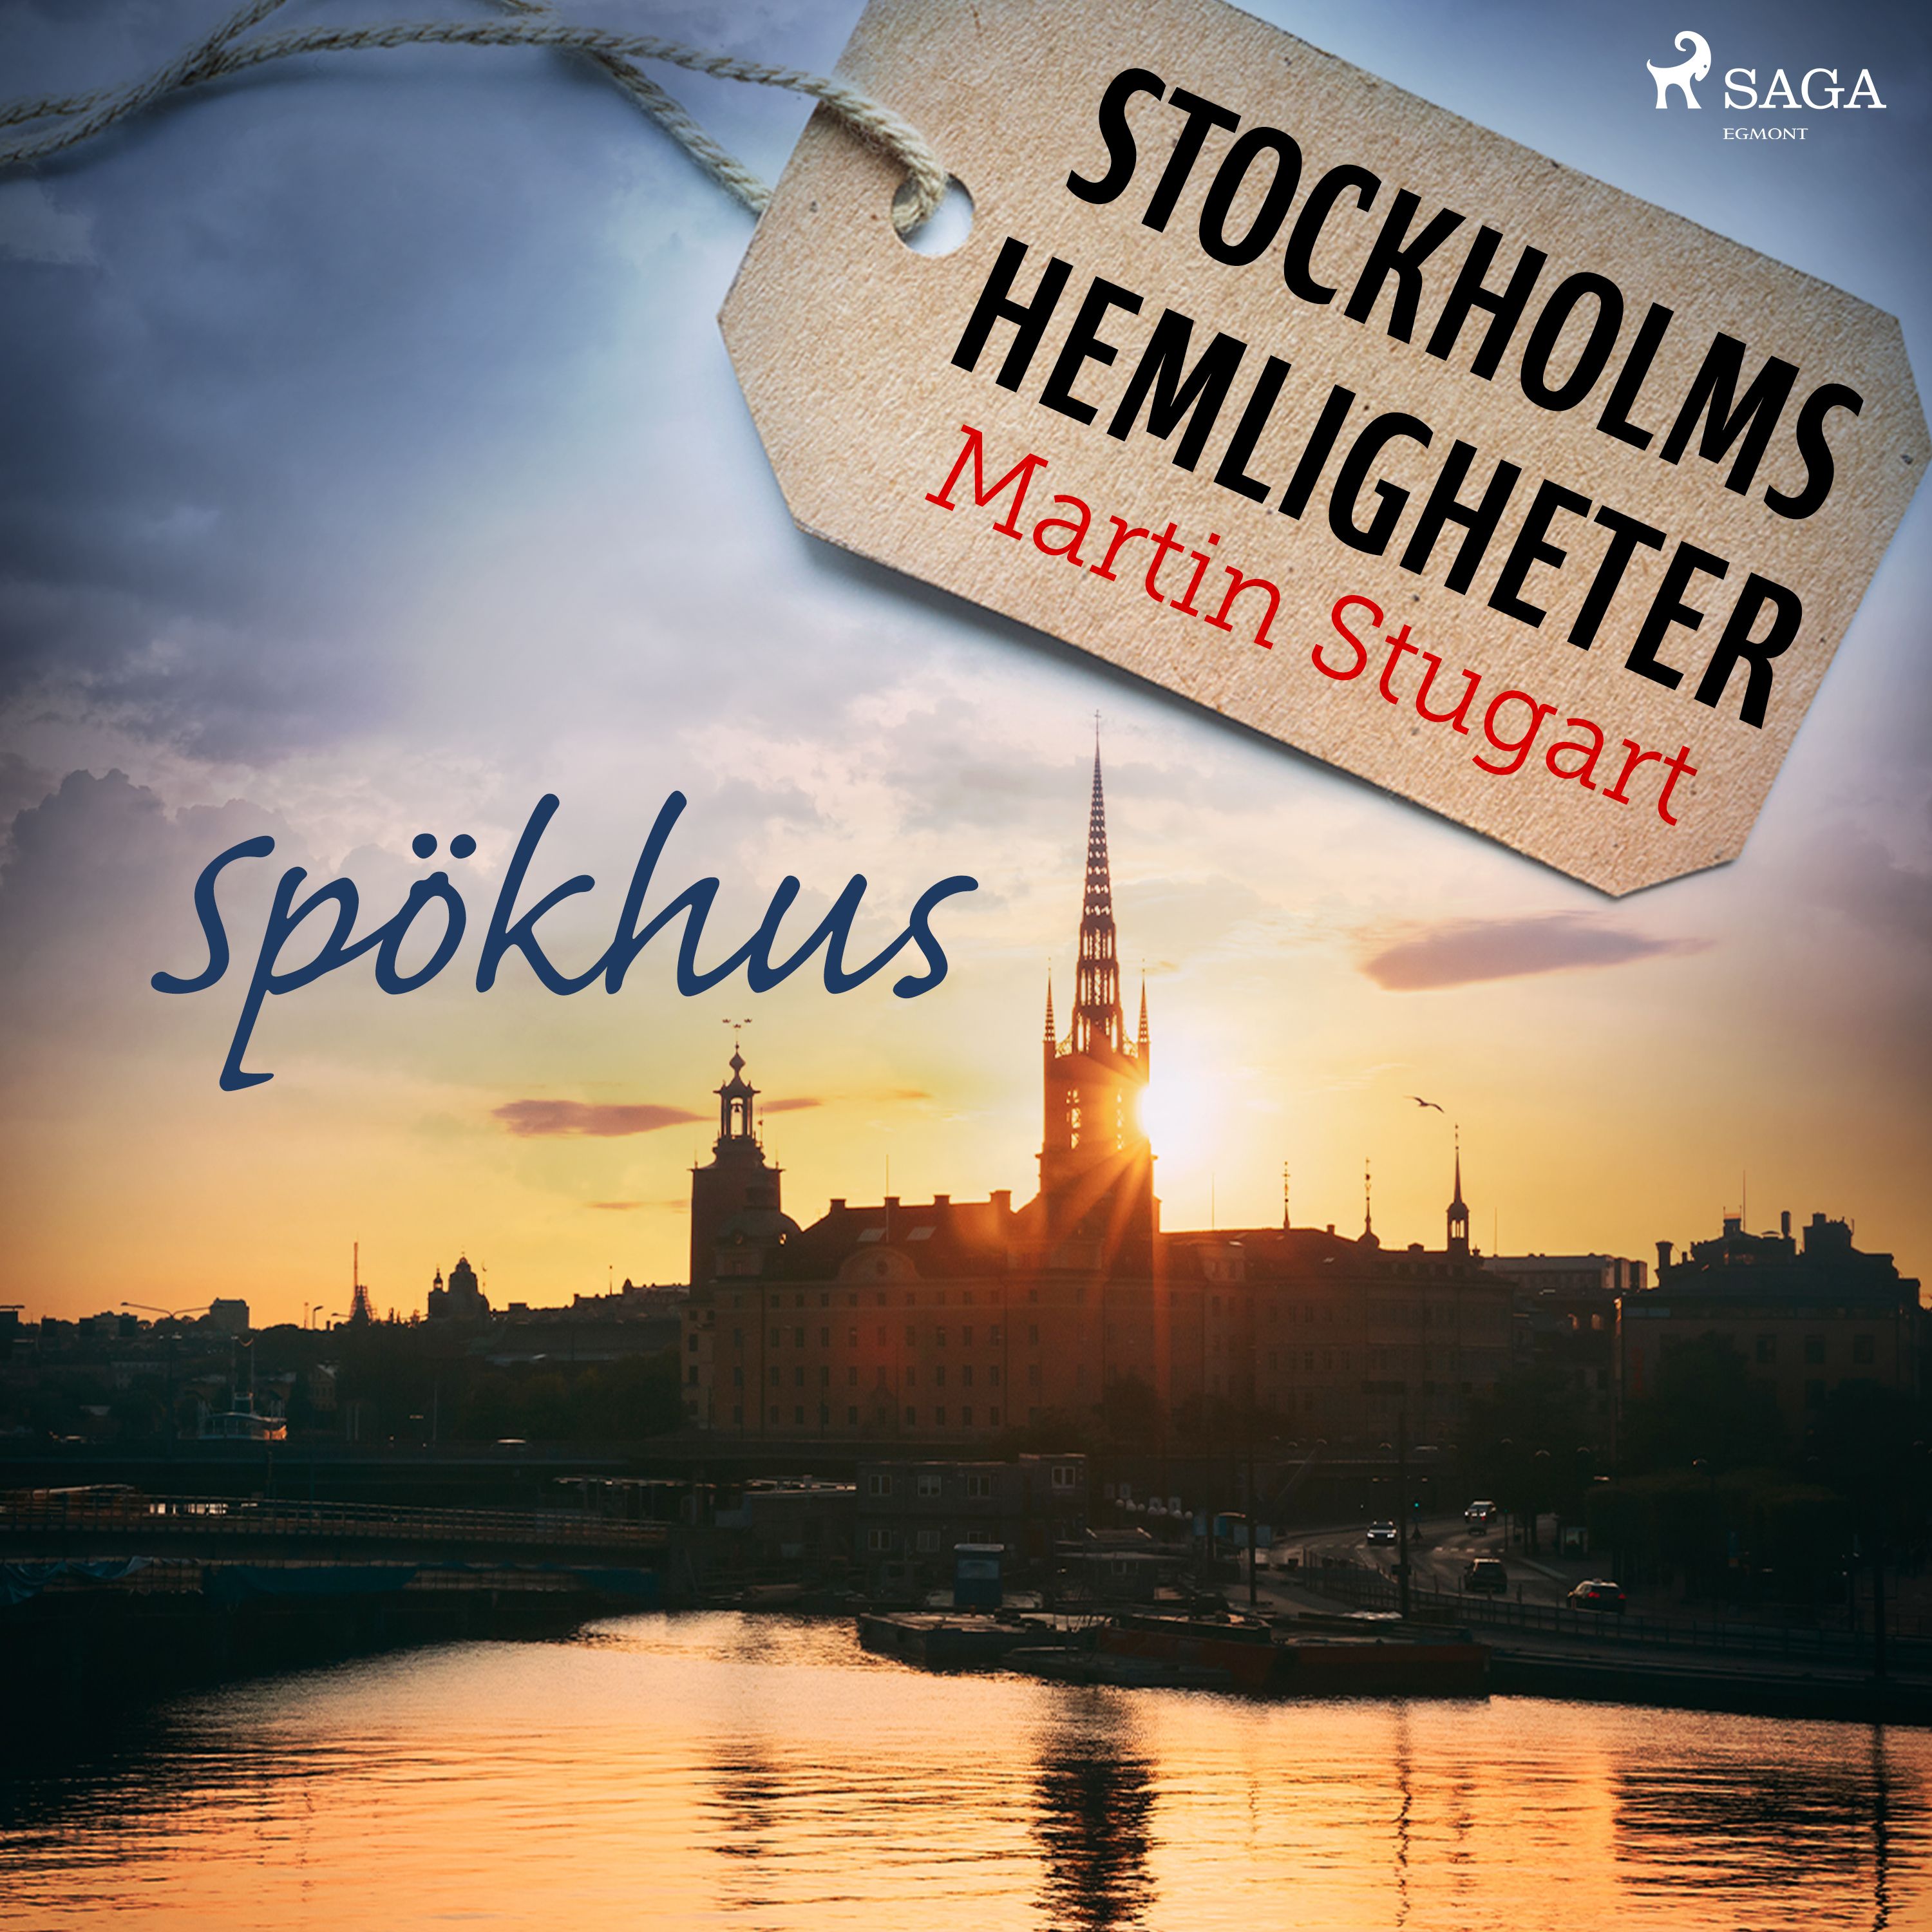 Stockholms hemligheter: Spökhus, ljudbok av Martin Stugart